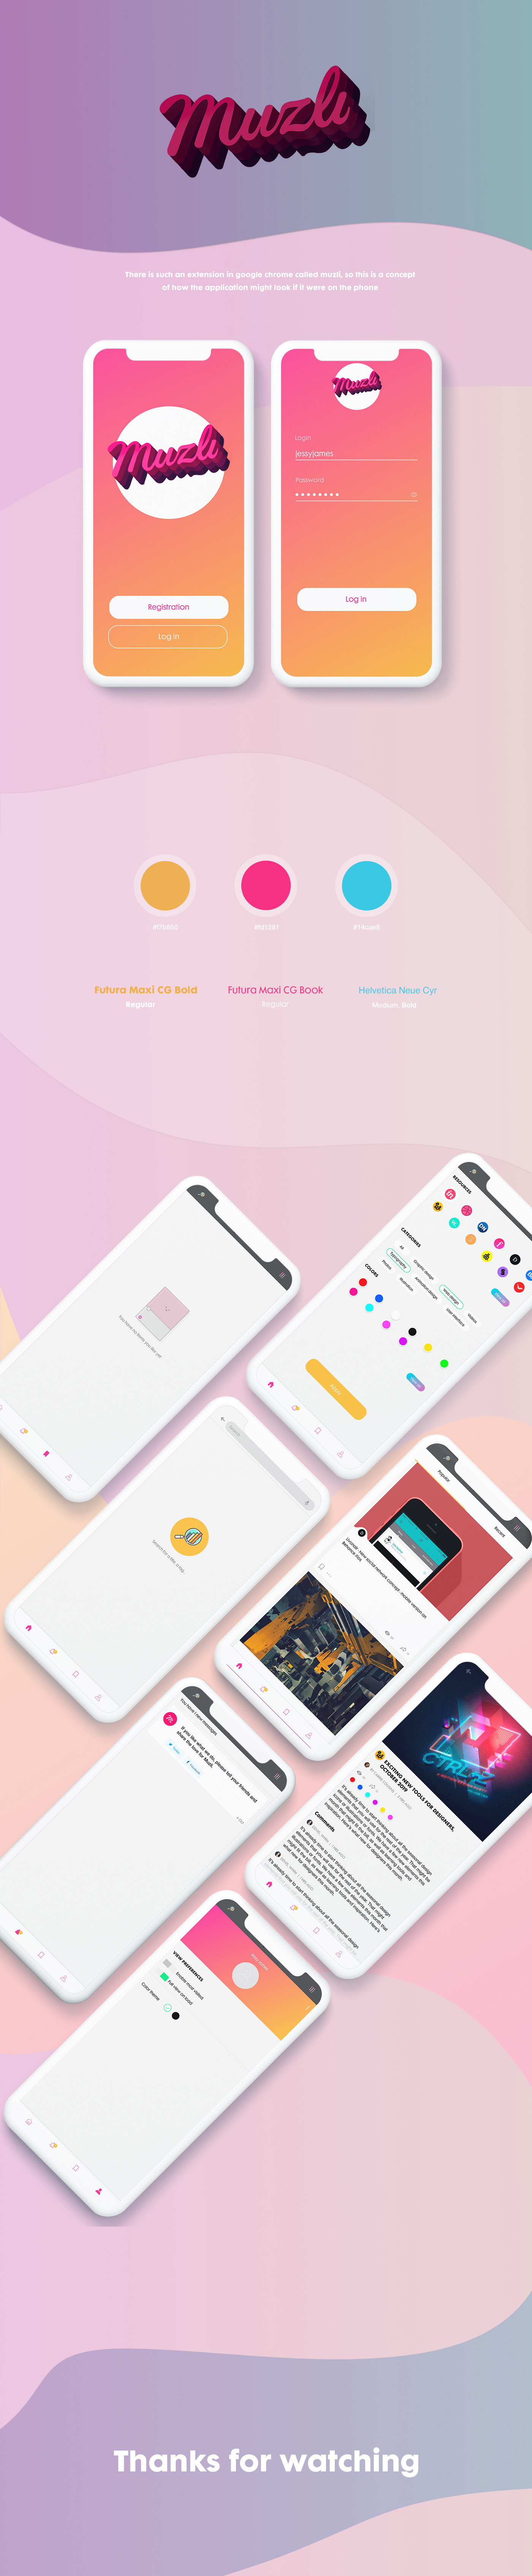 Web design mobileapp UI/UX Project colors site